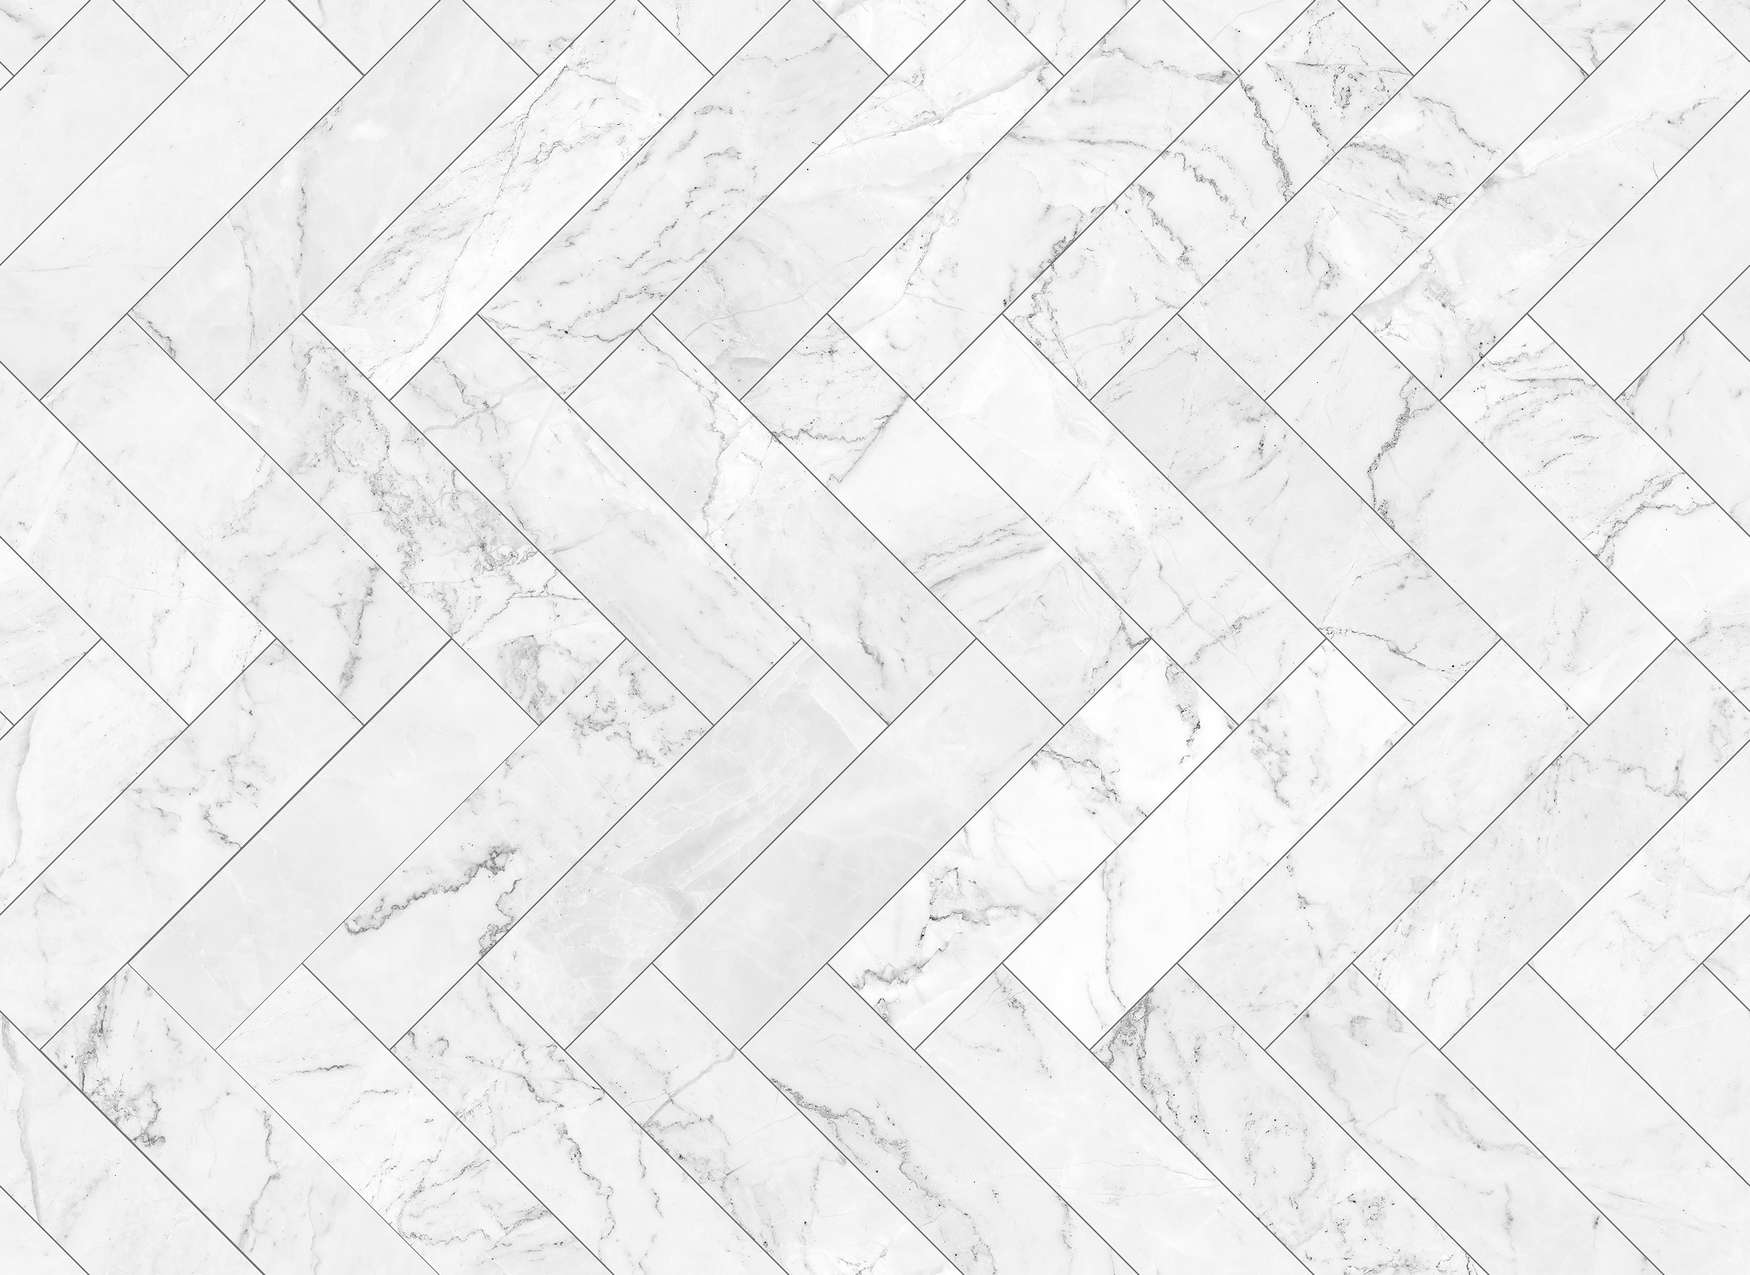             Marmor Fototapete Fliesen-Muster – Grau, Weiß, Schwarz
        